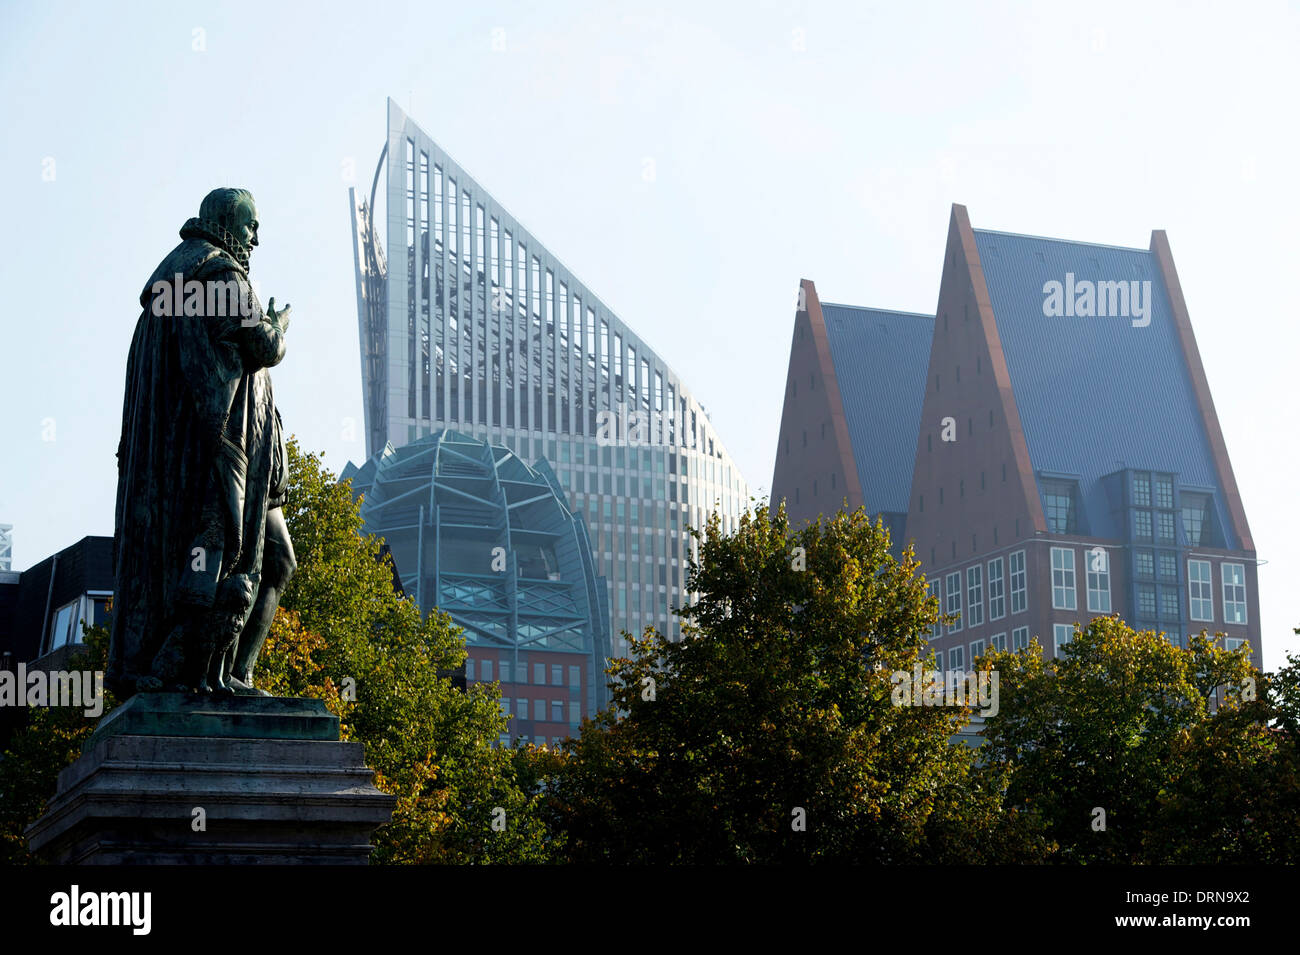 Den Haag. 10.07.2013. Stadtbild mit Staue von Willem von Oranien und das Regierungsgebäude von 'Plein' gesehen. Stockfoto